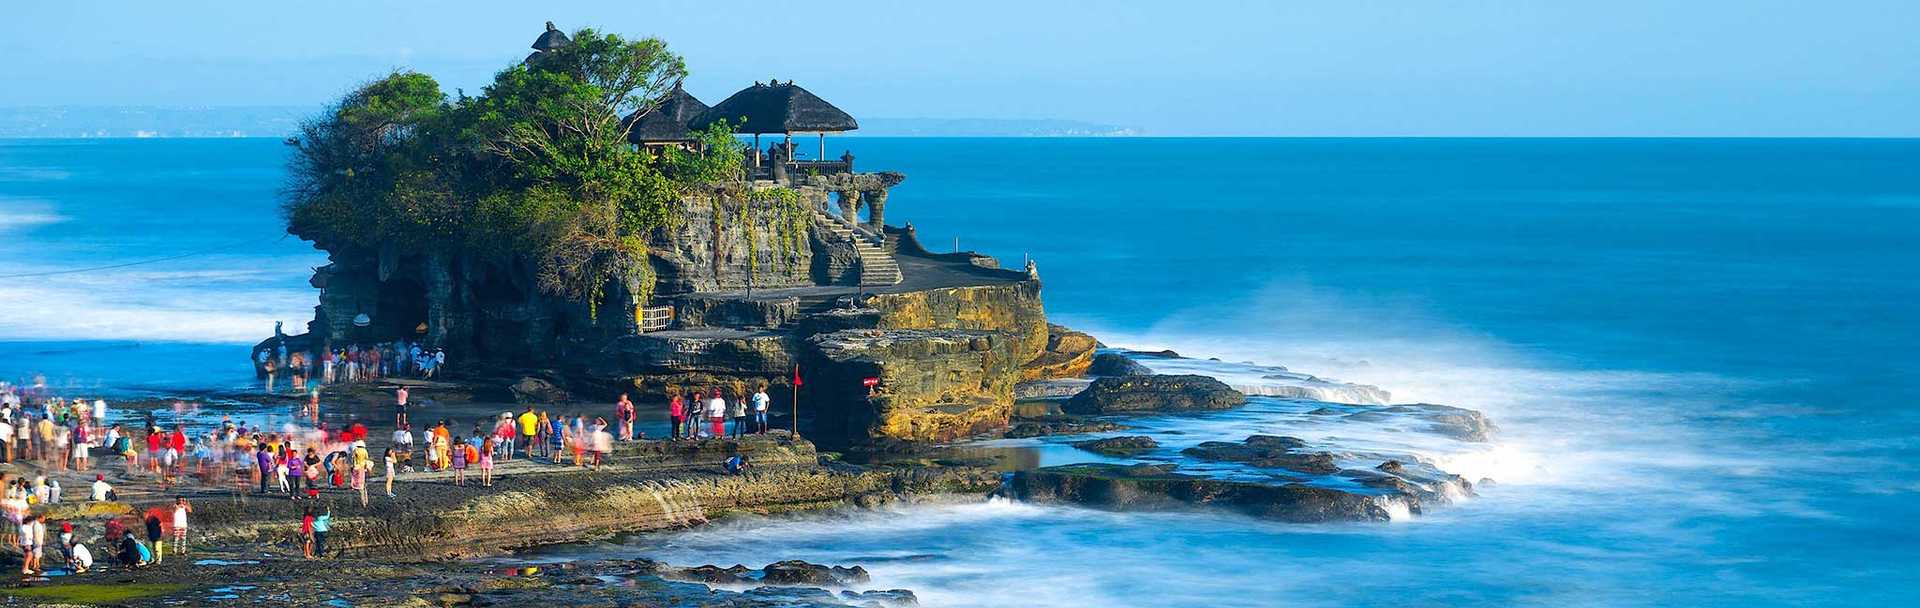 Bali Tour of Beraban&#039;s Tanah Lot Temple